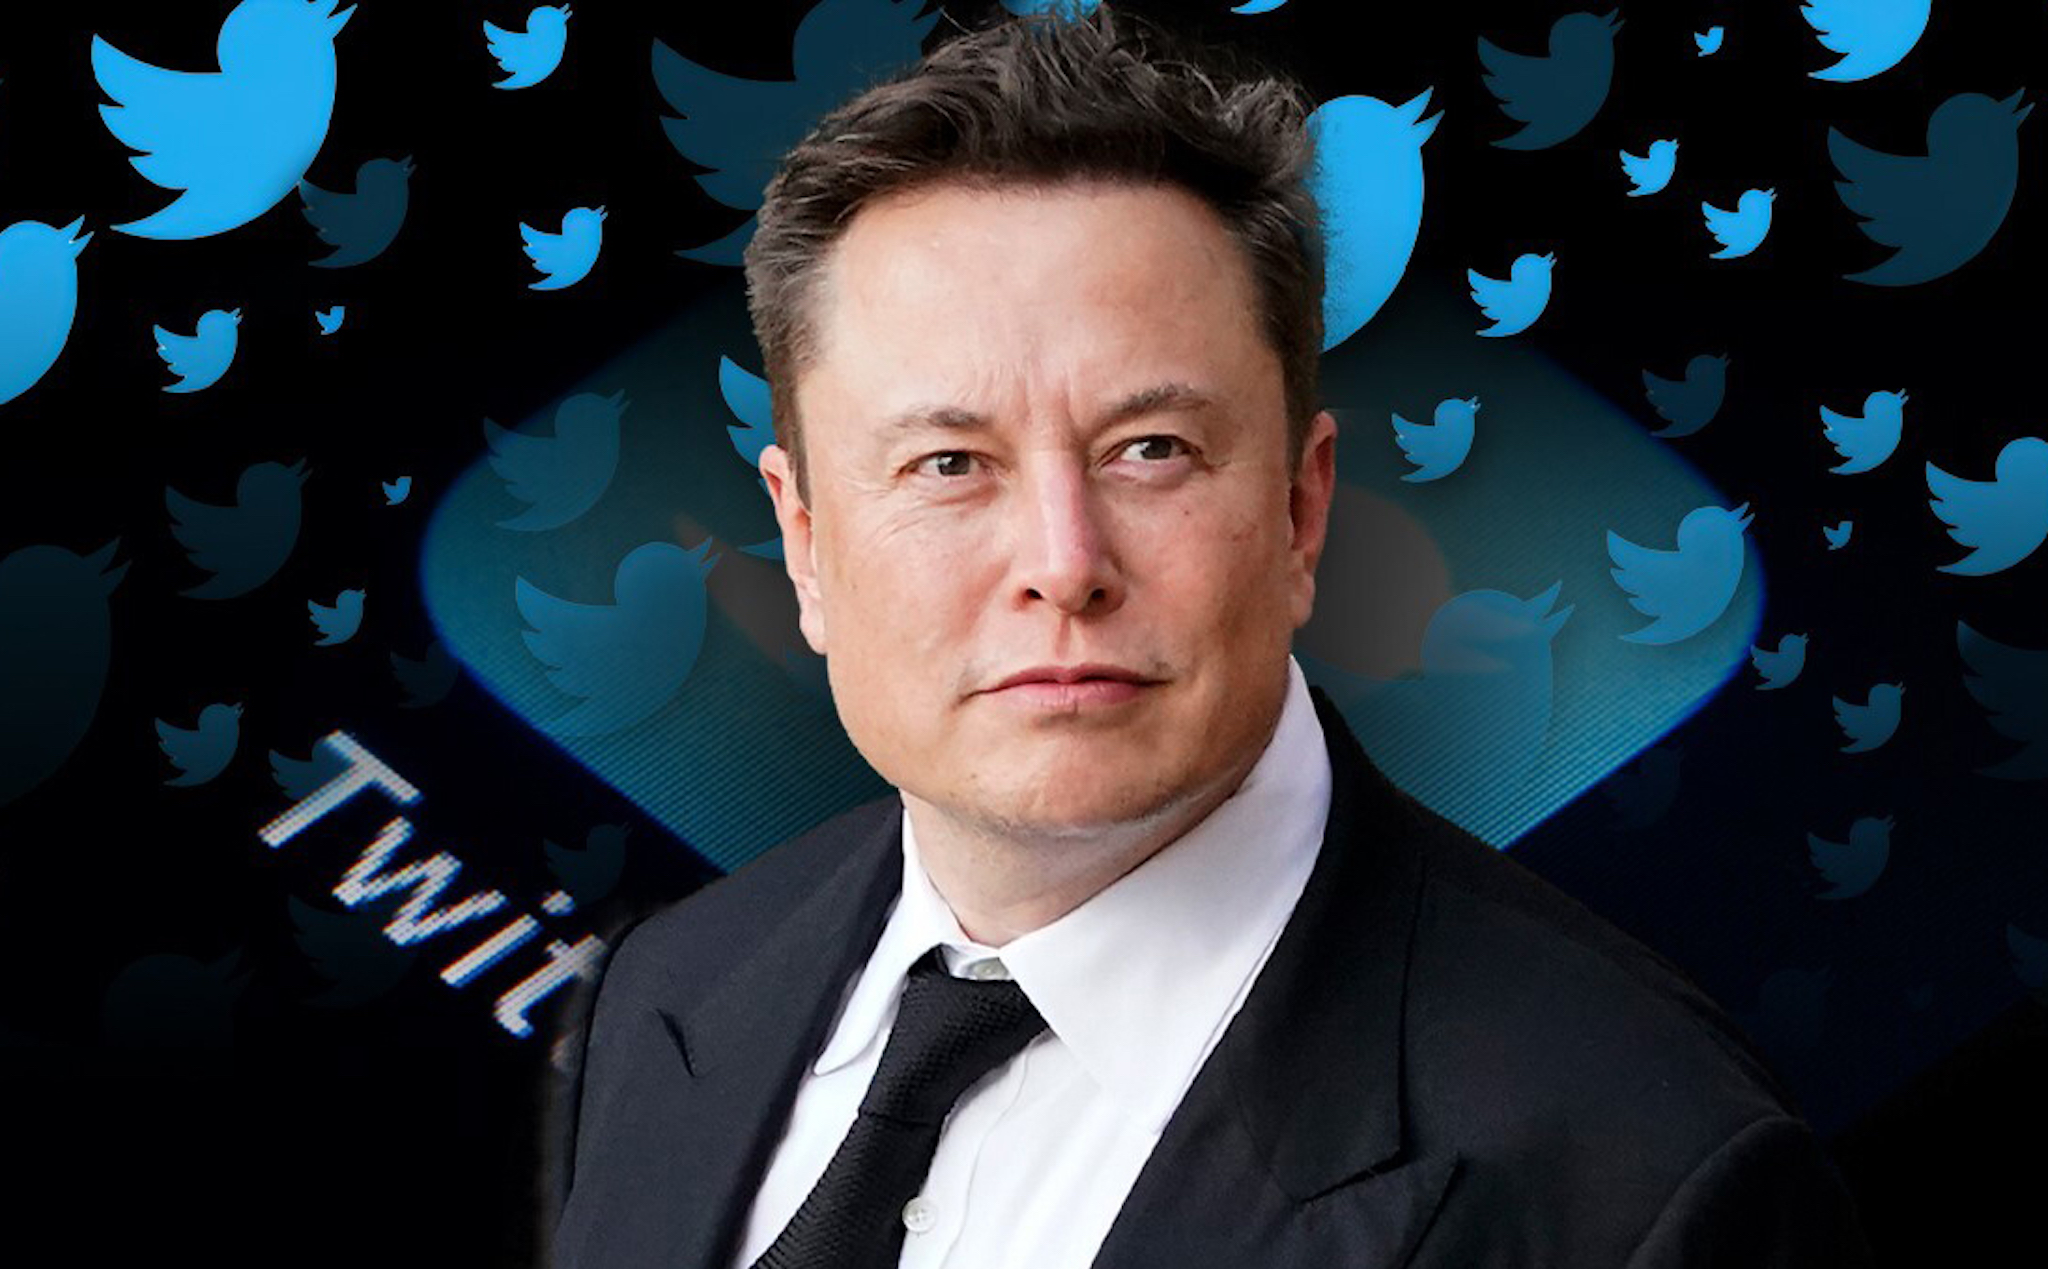 Sau thương vụ mua Twitter, tài sản Elon Musk giảm xuống dưới 200 tỷ USD